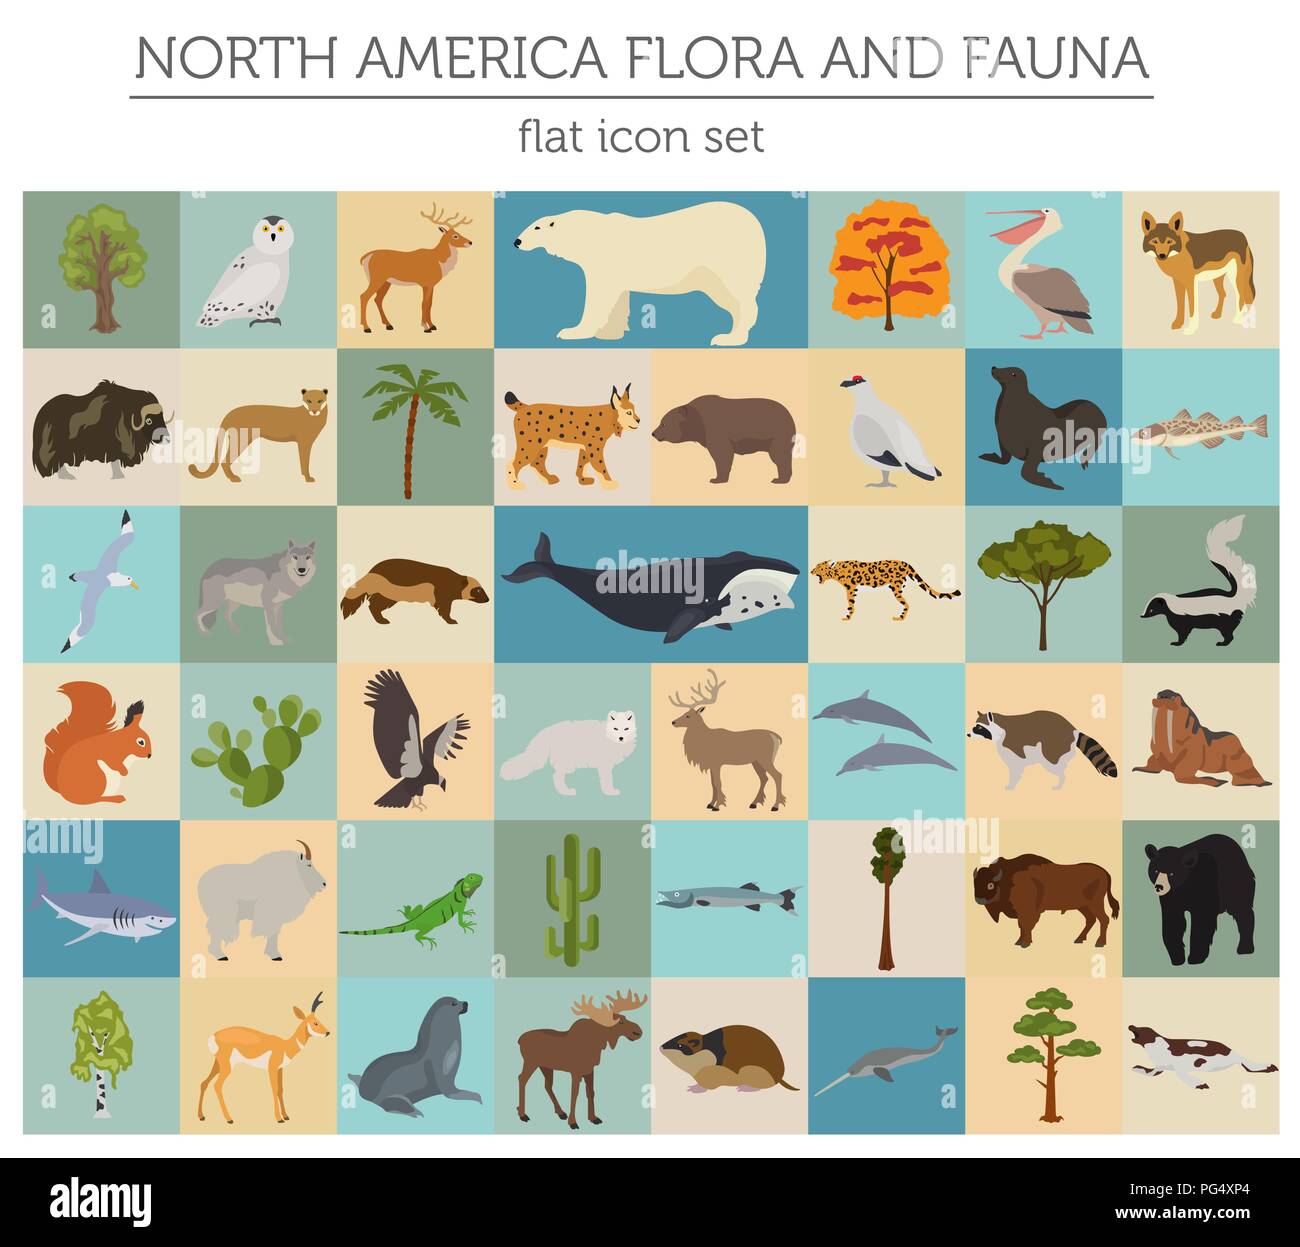 Nordamerika Flora und Fauna flache Elemente. Tiere, Vögel und Sea Life big eingestellt. Ihre Geographie Infografiken Sammlung aufzubauen. Vector Illustration Stock Vektor